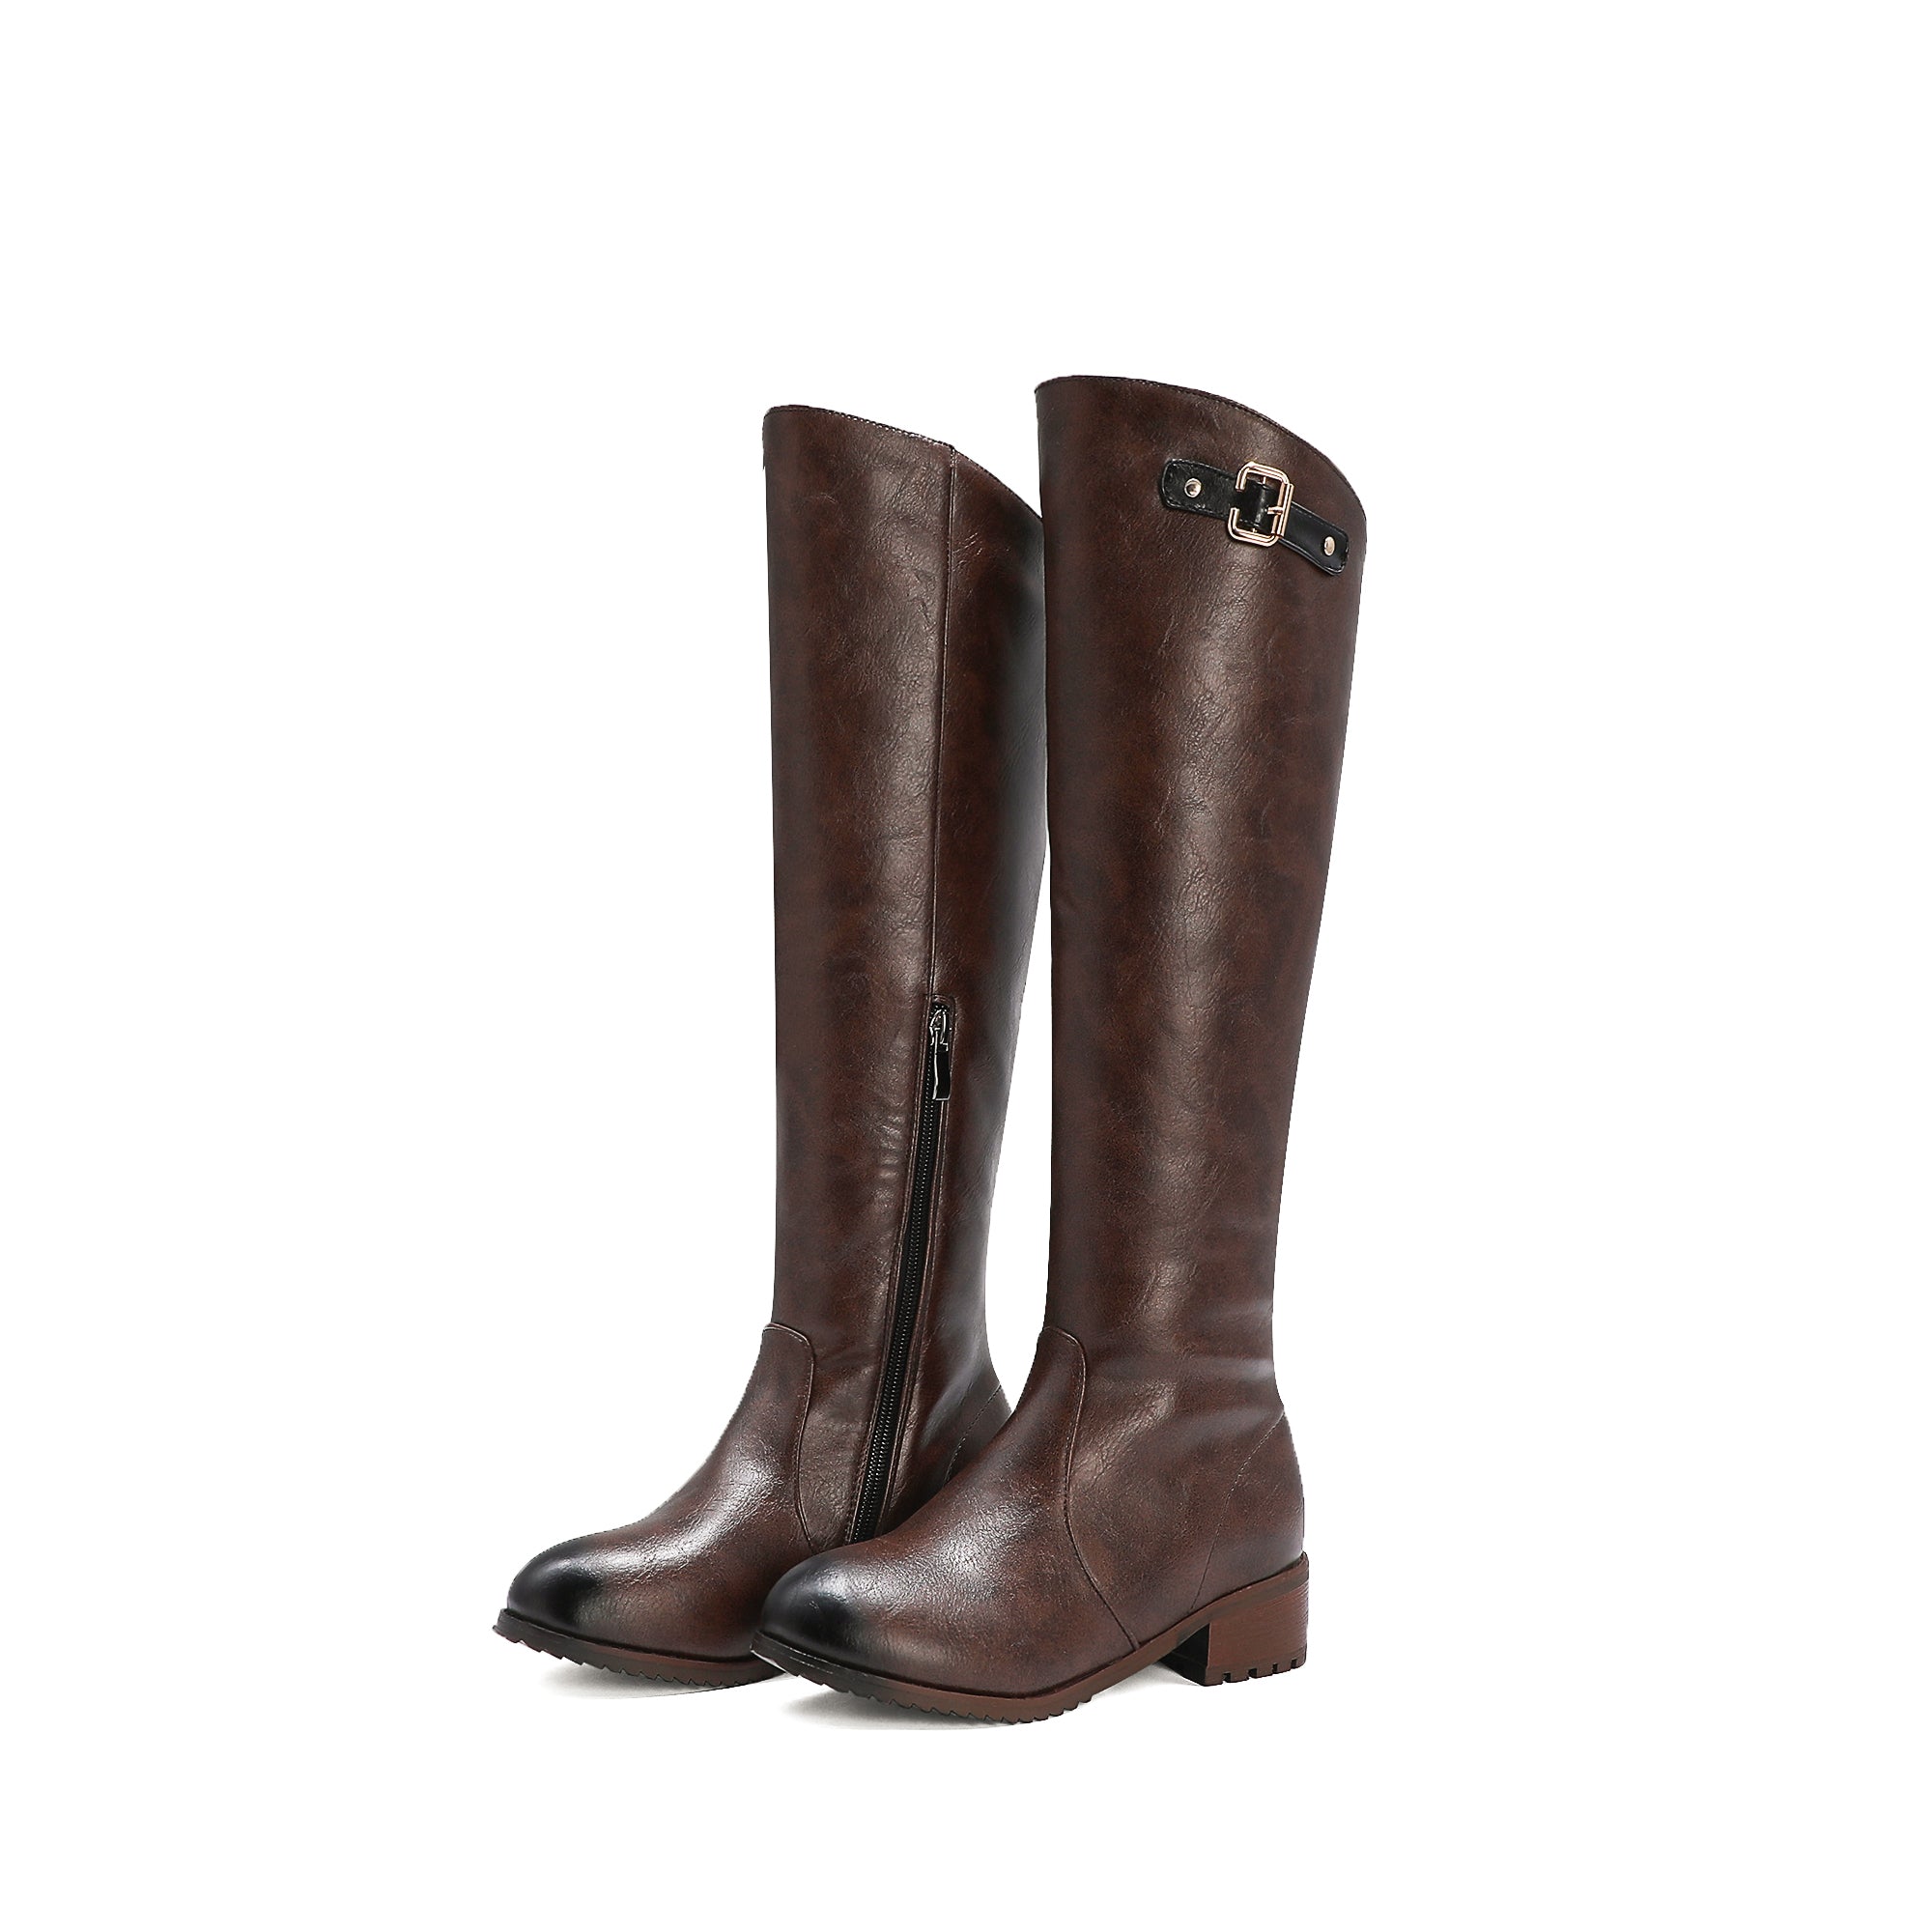 Bigsizeheels Black embellished retro round toe boots - coffee freeshipping - bigsizeheel®-size5-size15 -All Plus Sizes Available!